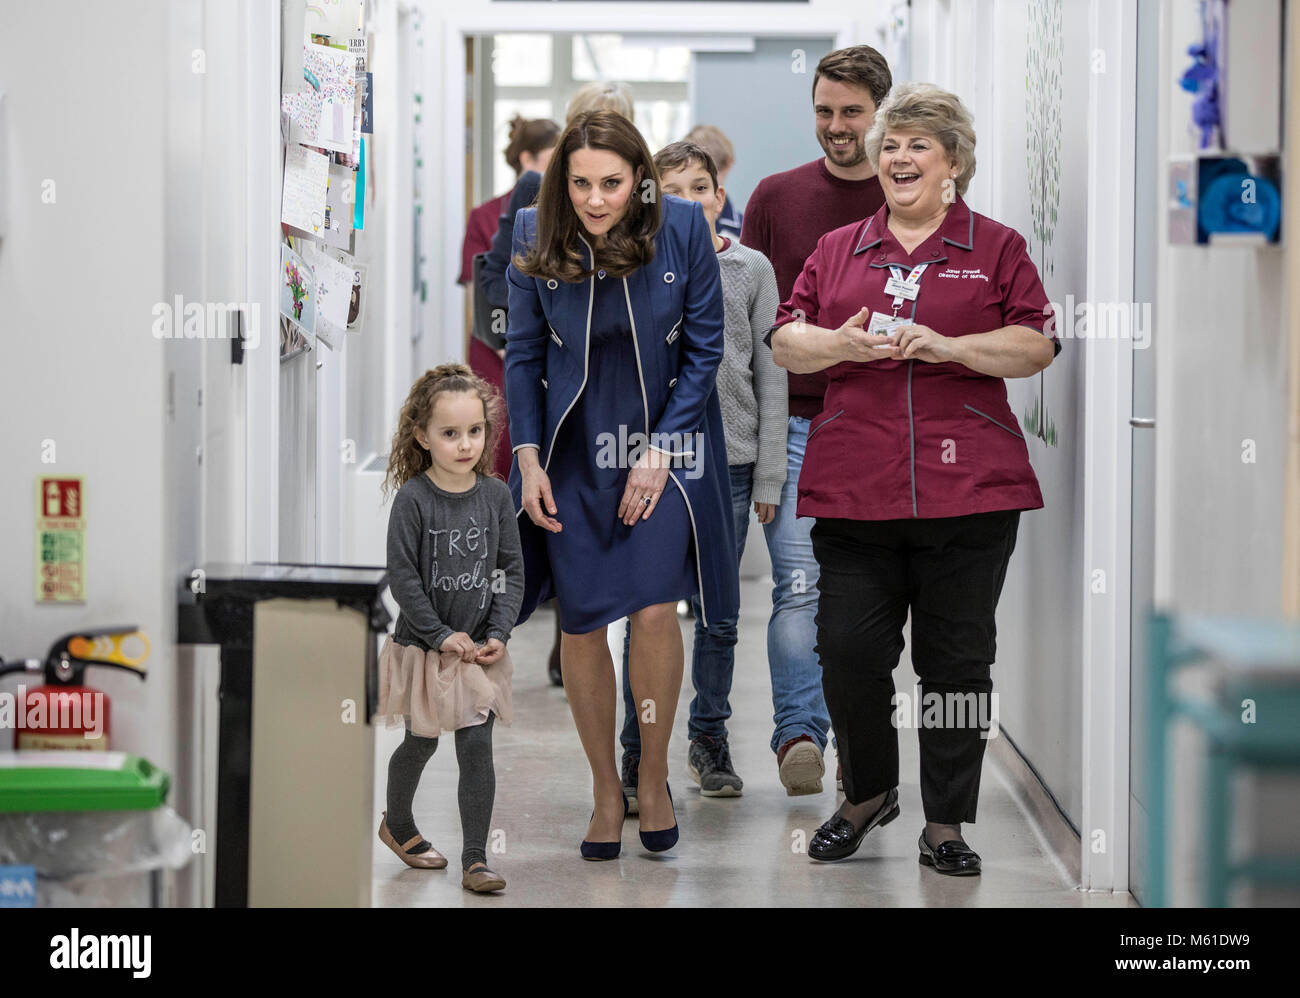 La duchesse de Cambridge est dirigée par cinq ans Bella Kedwell- Parsons le long d'un couloir de l'aire de "Snow leopard" ward lors d'une visite au St Thomas' Hospital, Londres, pour lancer officiellement une campagne pour promouvoir les soins infirmiers dans le monde entier. Banque D'Images